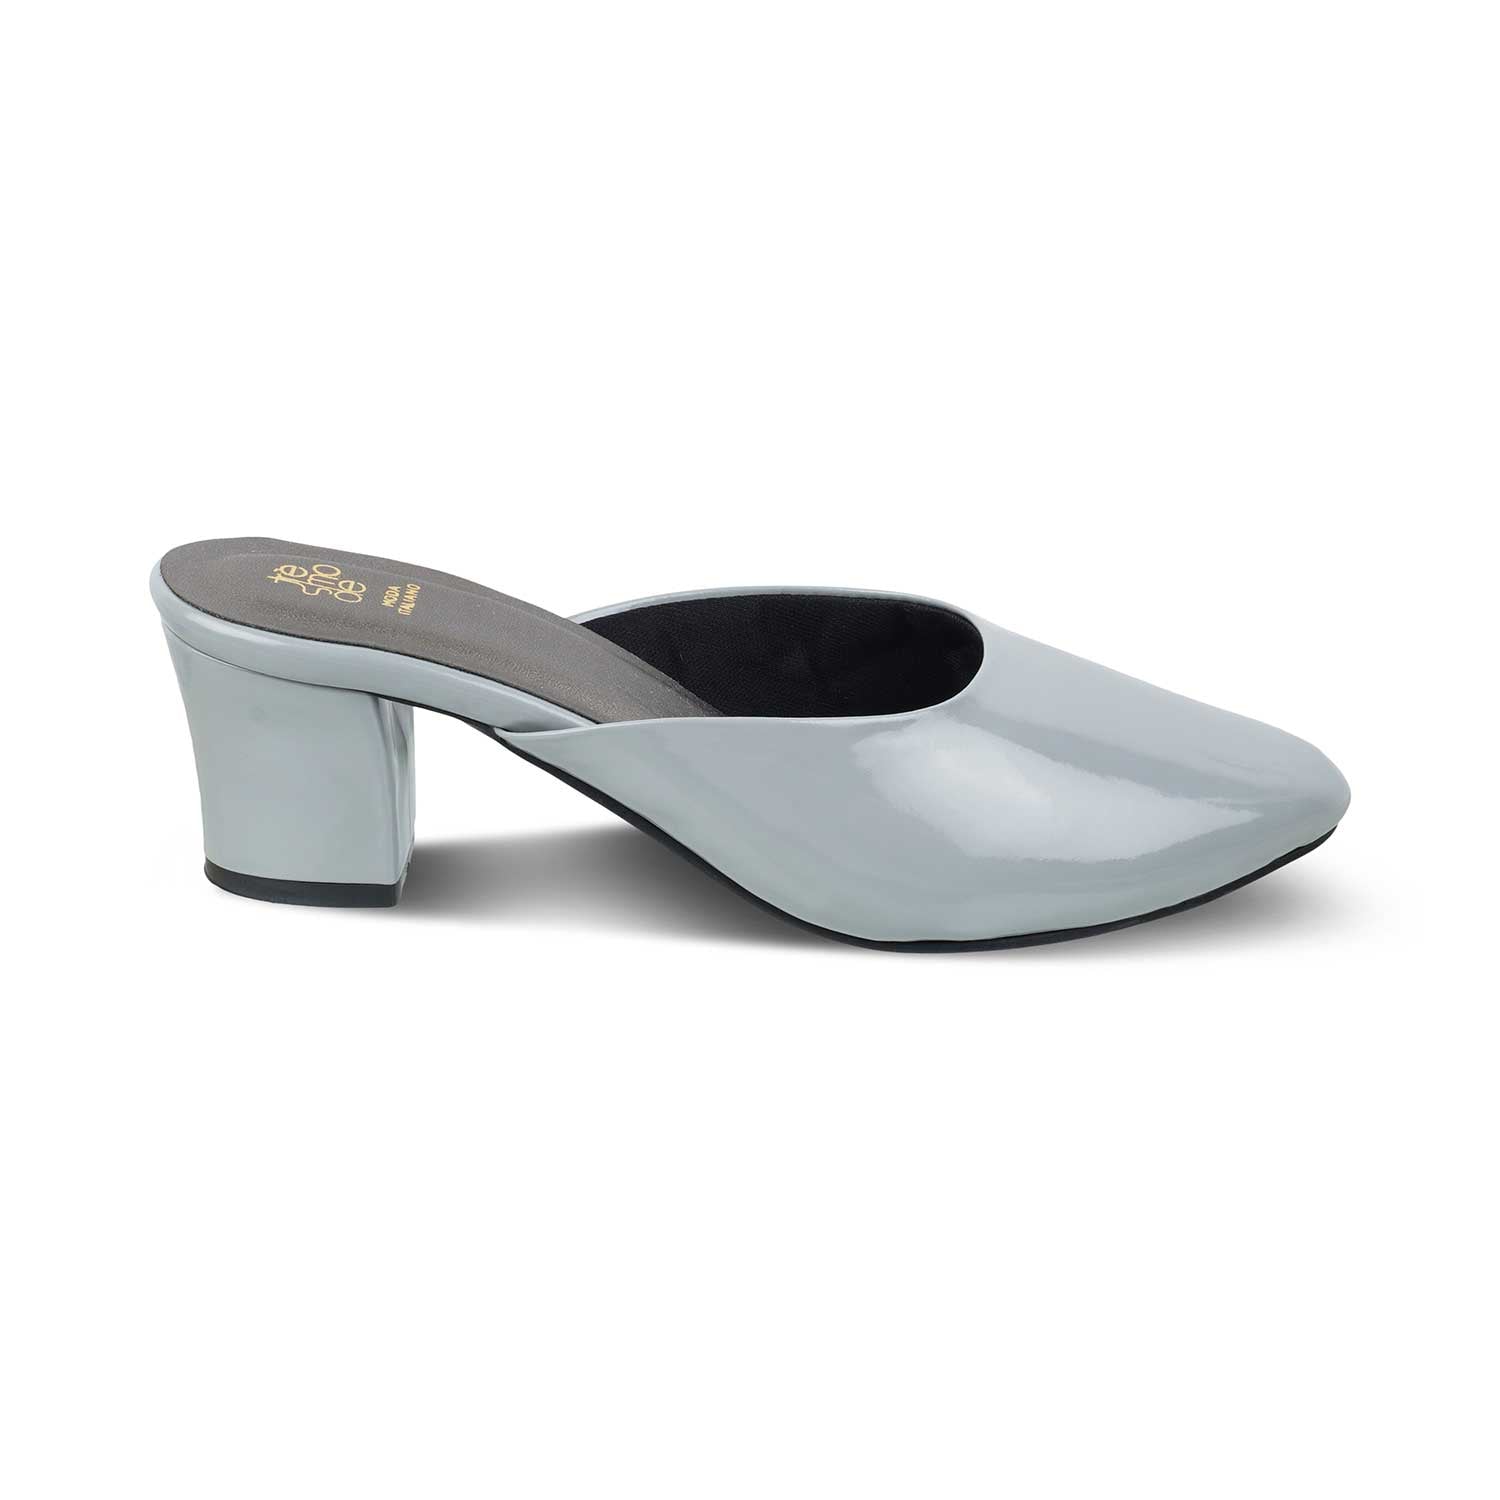 The Carbo Grey Women's Dress Block Heel Sandals Tresmode